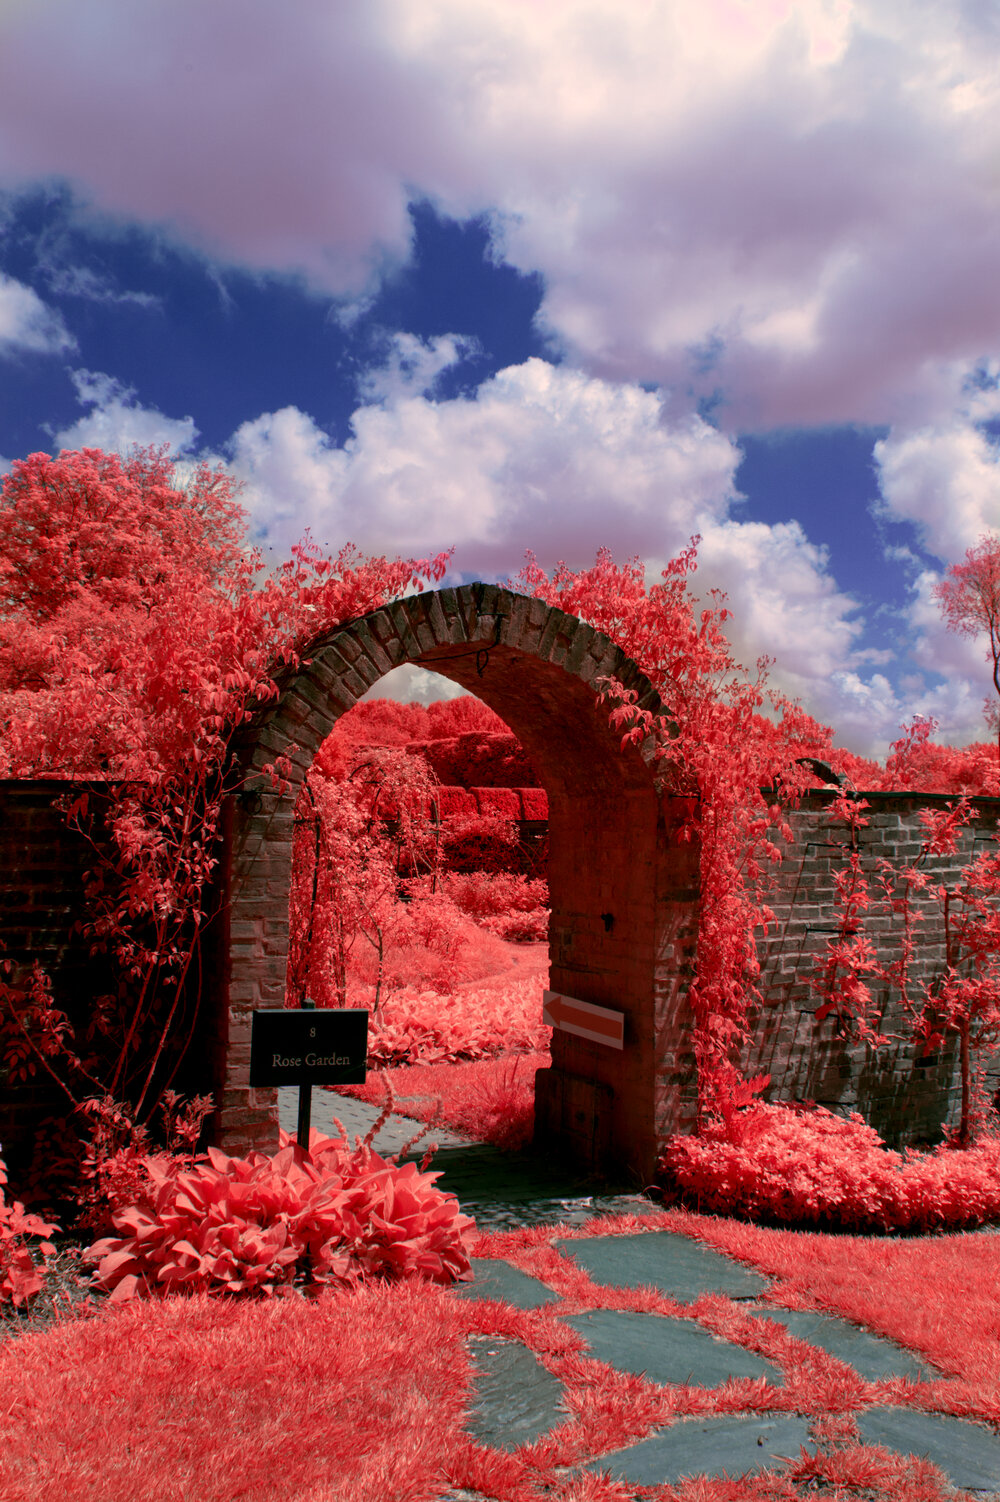 The Rose Garden.jpg